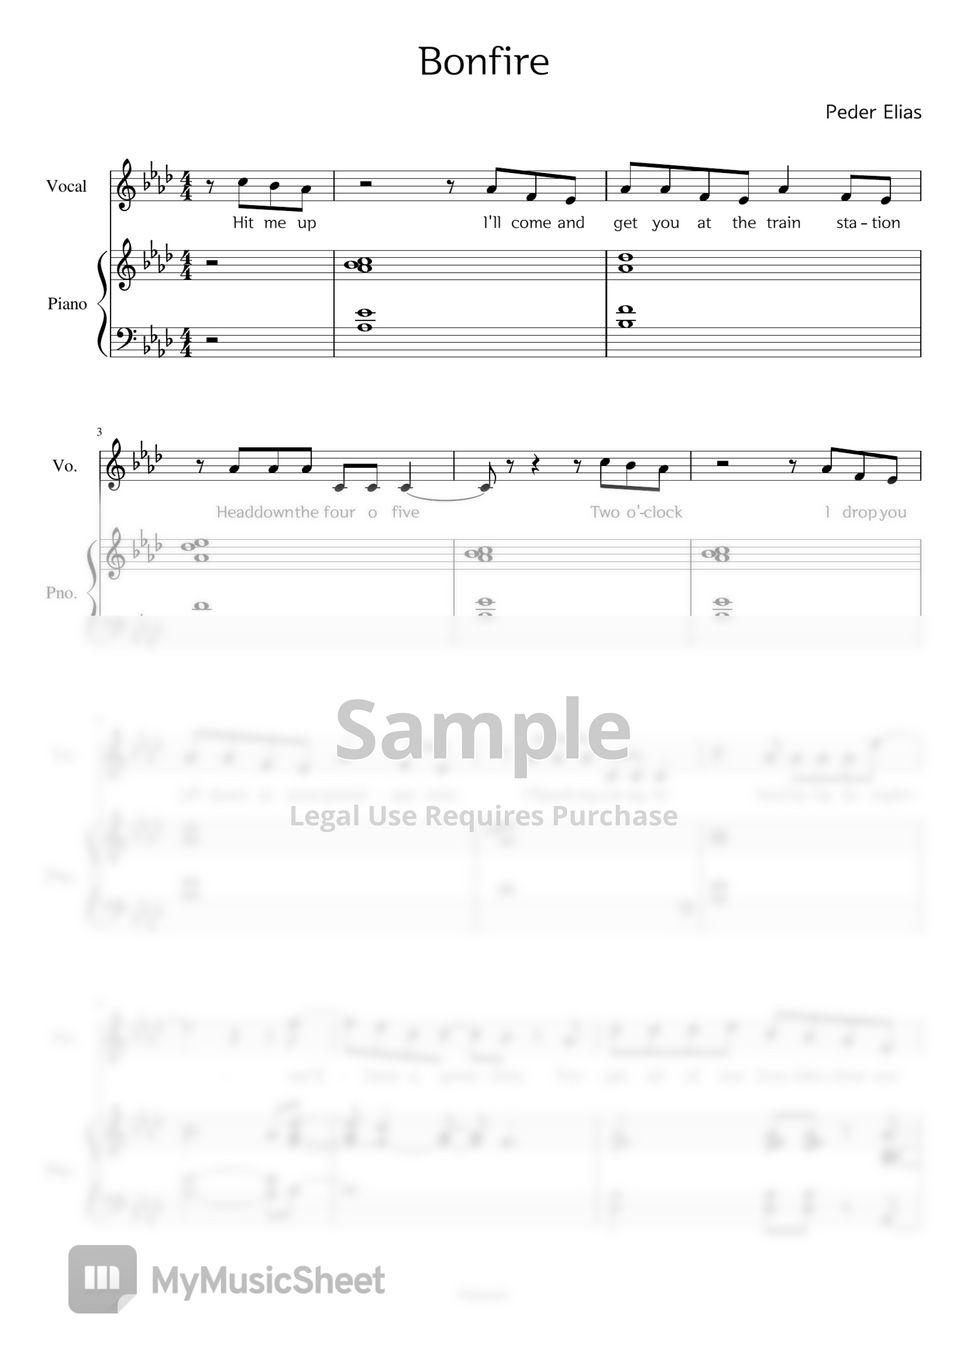 Peder Elias - Bonfire score (piano with vocal) by daeunir